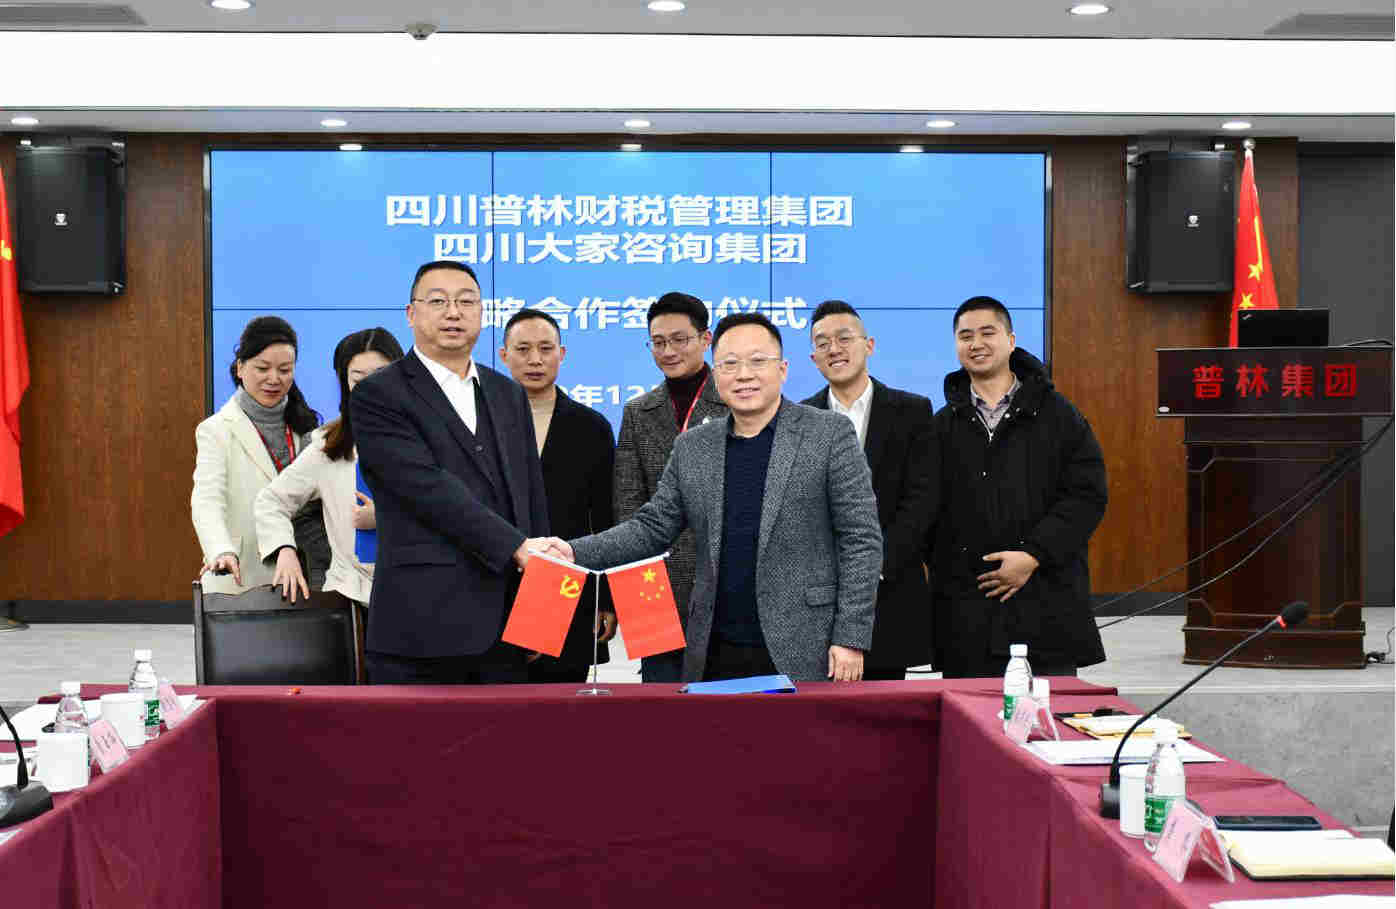 合作共赢|四川普林财税管理集团与四川大家咨询集团正式签署《战略合作协议》